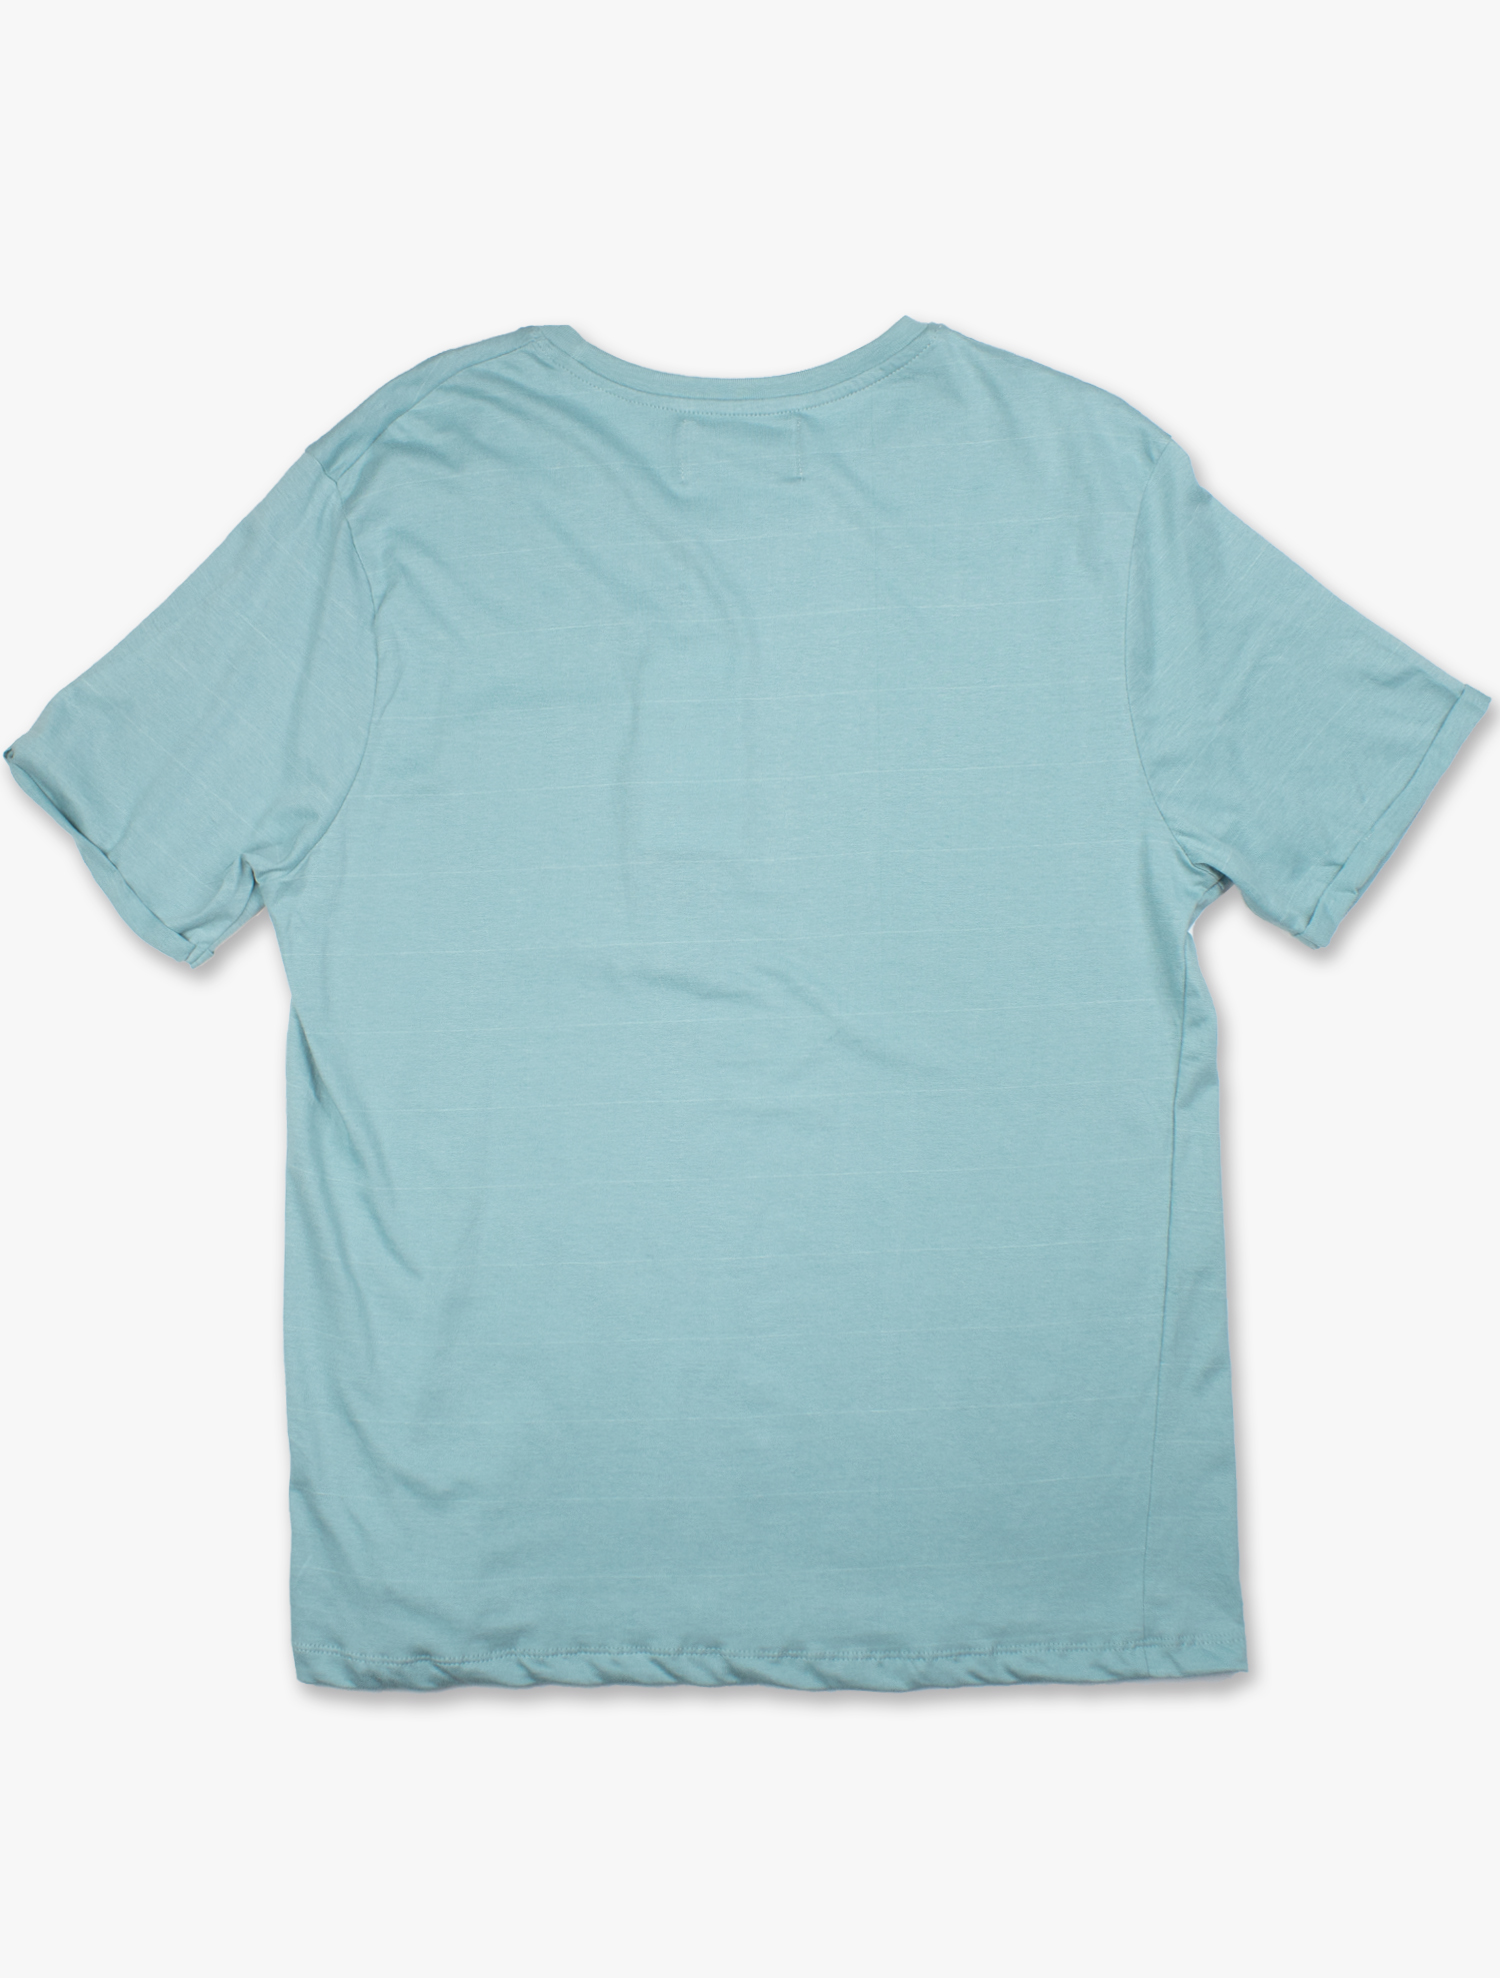 T-shirt básica com bolso no peito